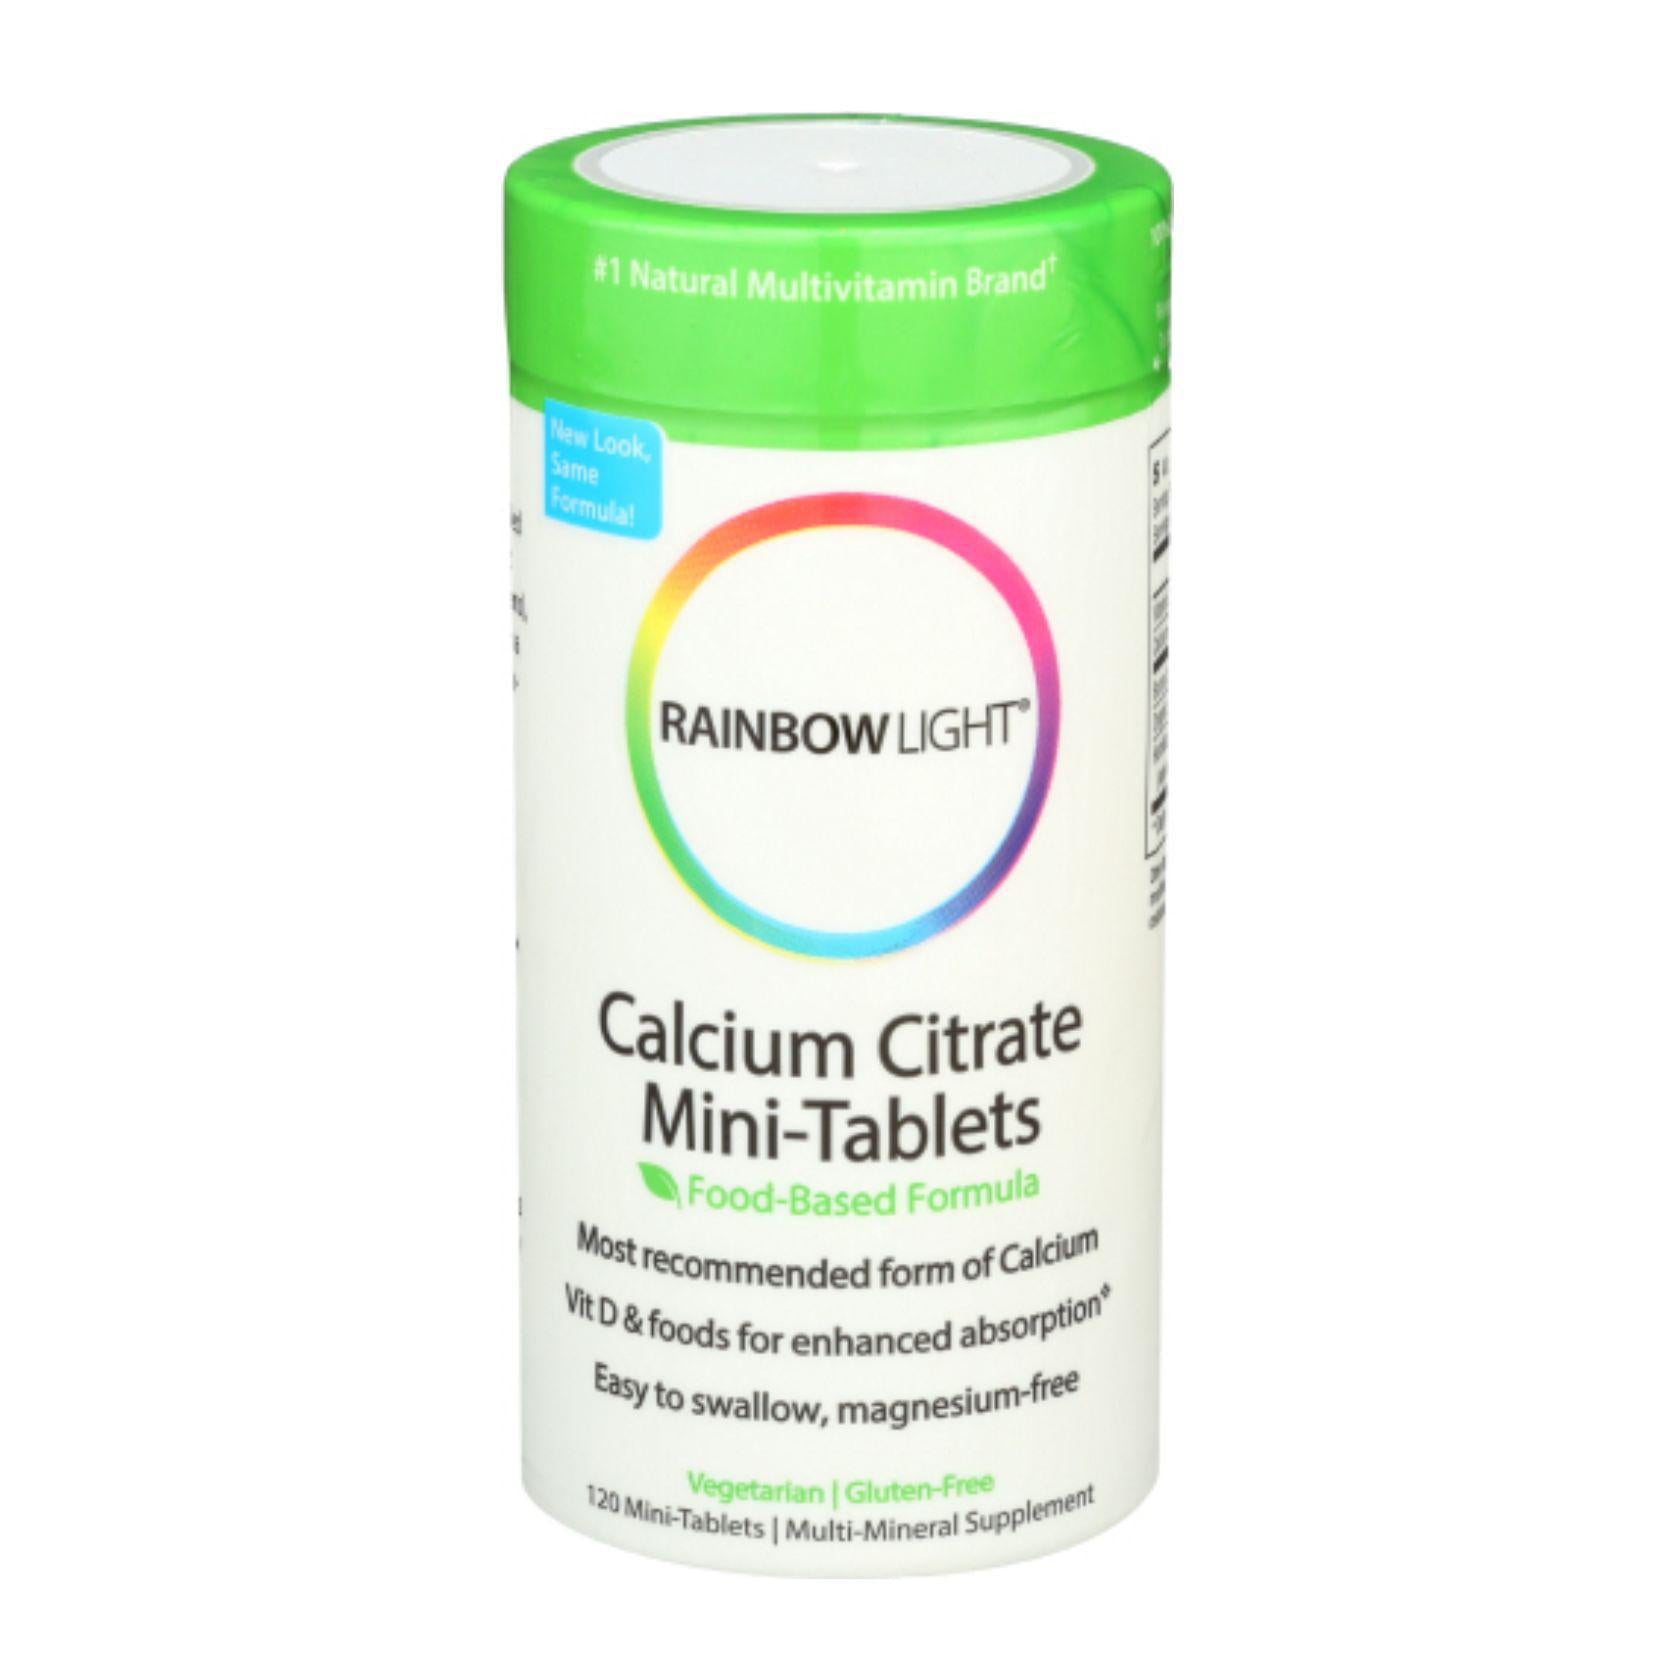 Rainbow Light Calcium Citrate Mini-Tablets - 120 ct